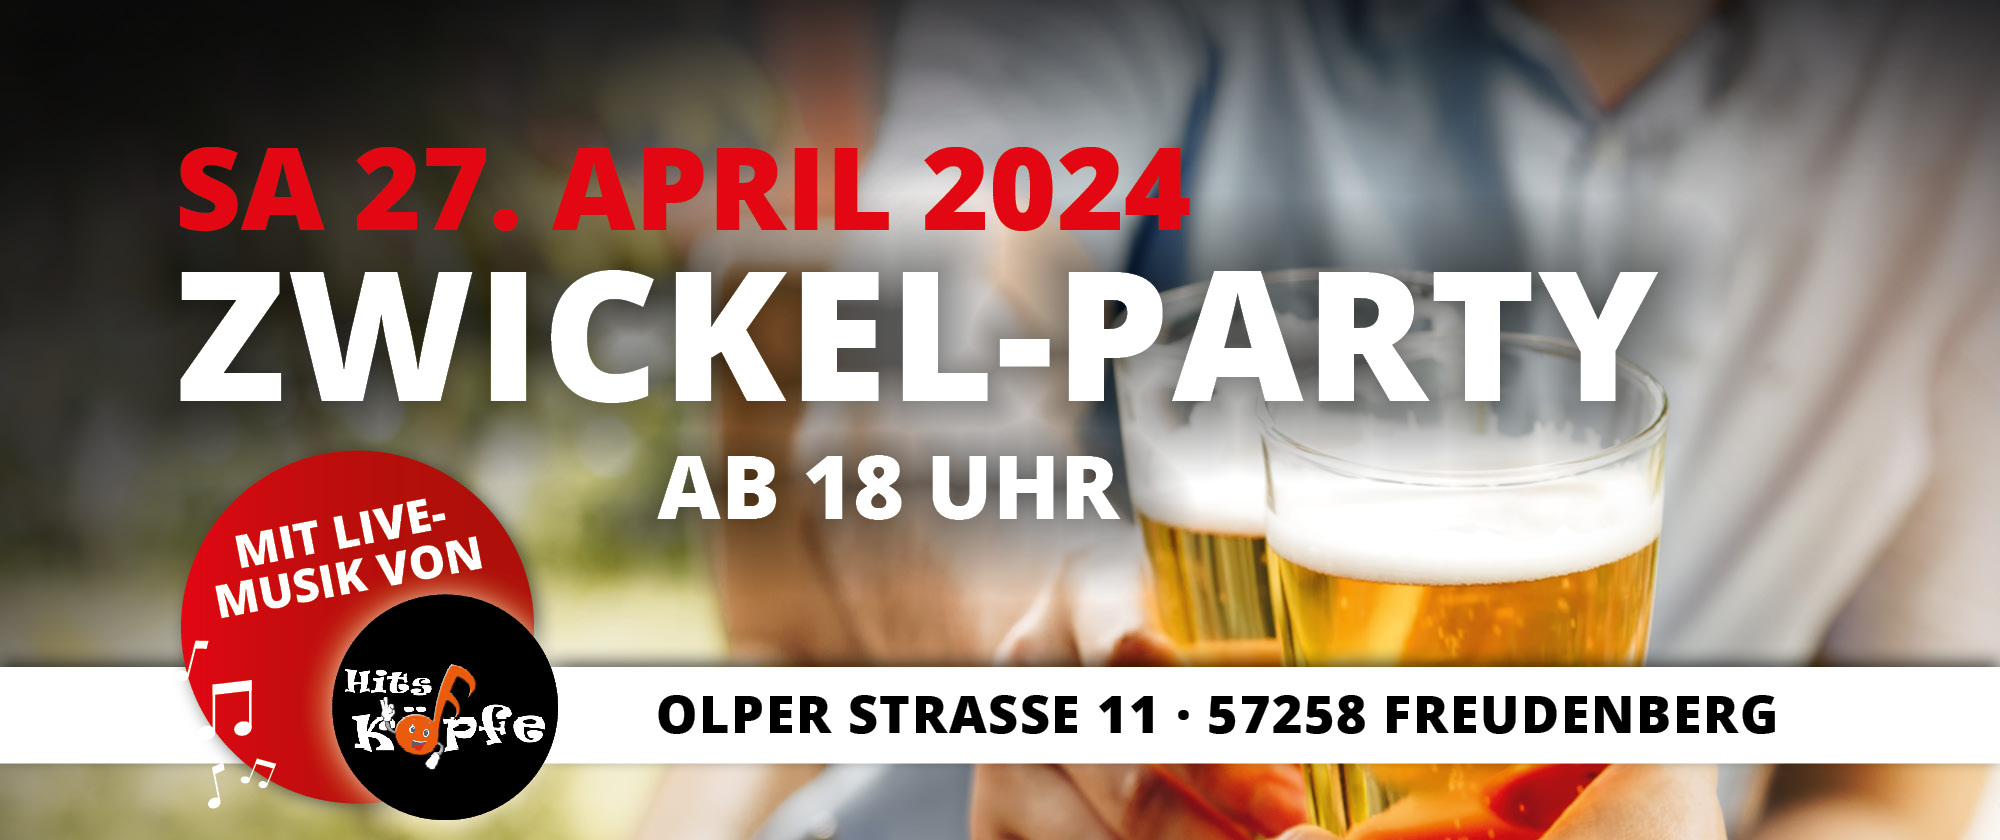 Zwickel-Party-Freudenberg